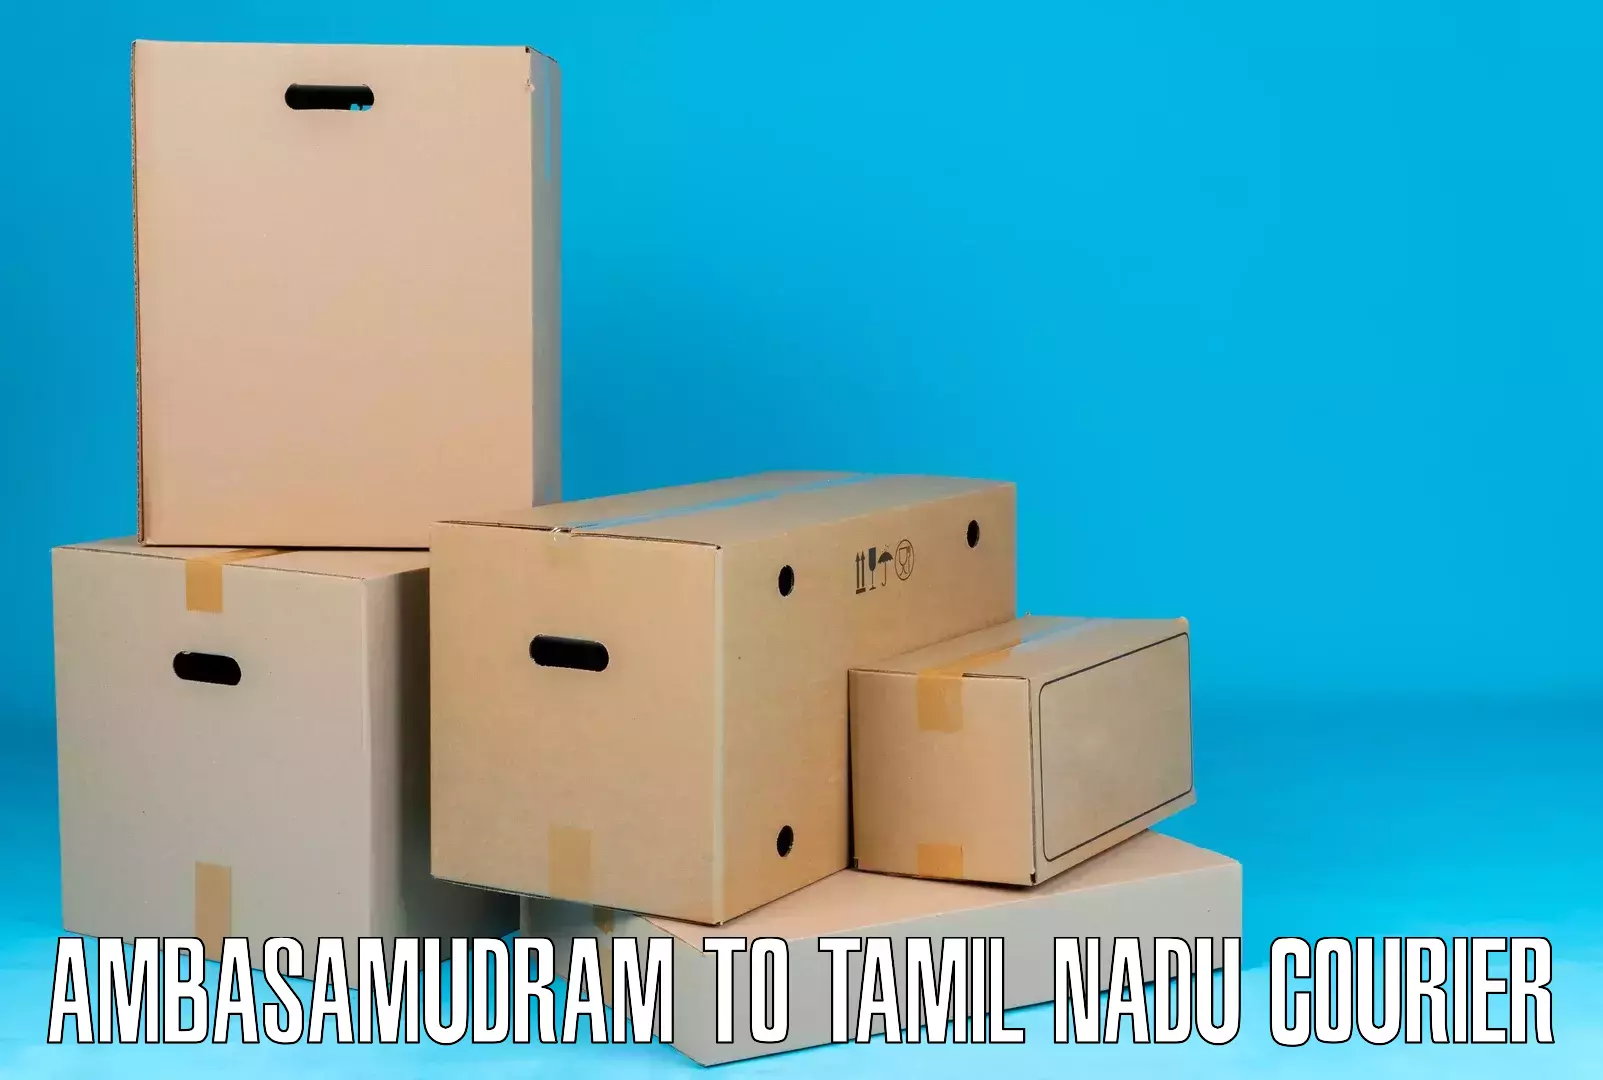 Cargo courier service Ambasamudram to Tamil Nadu